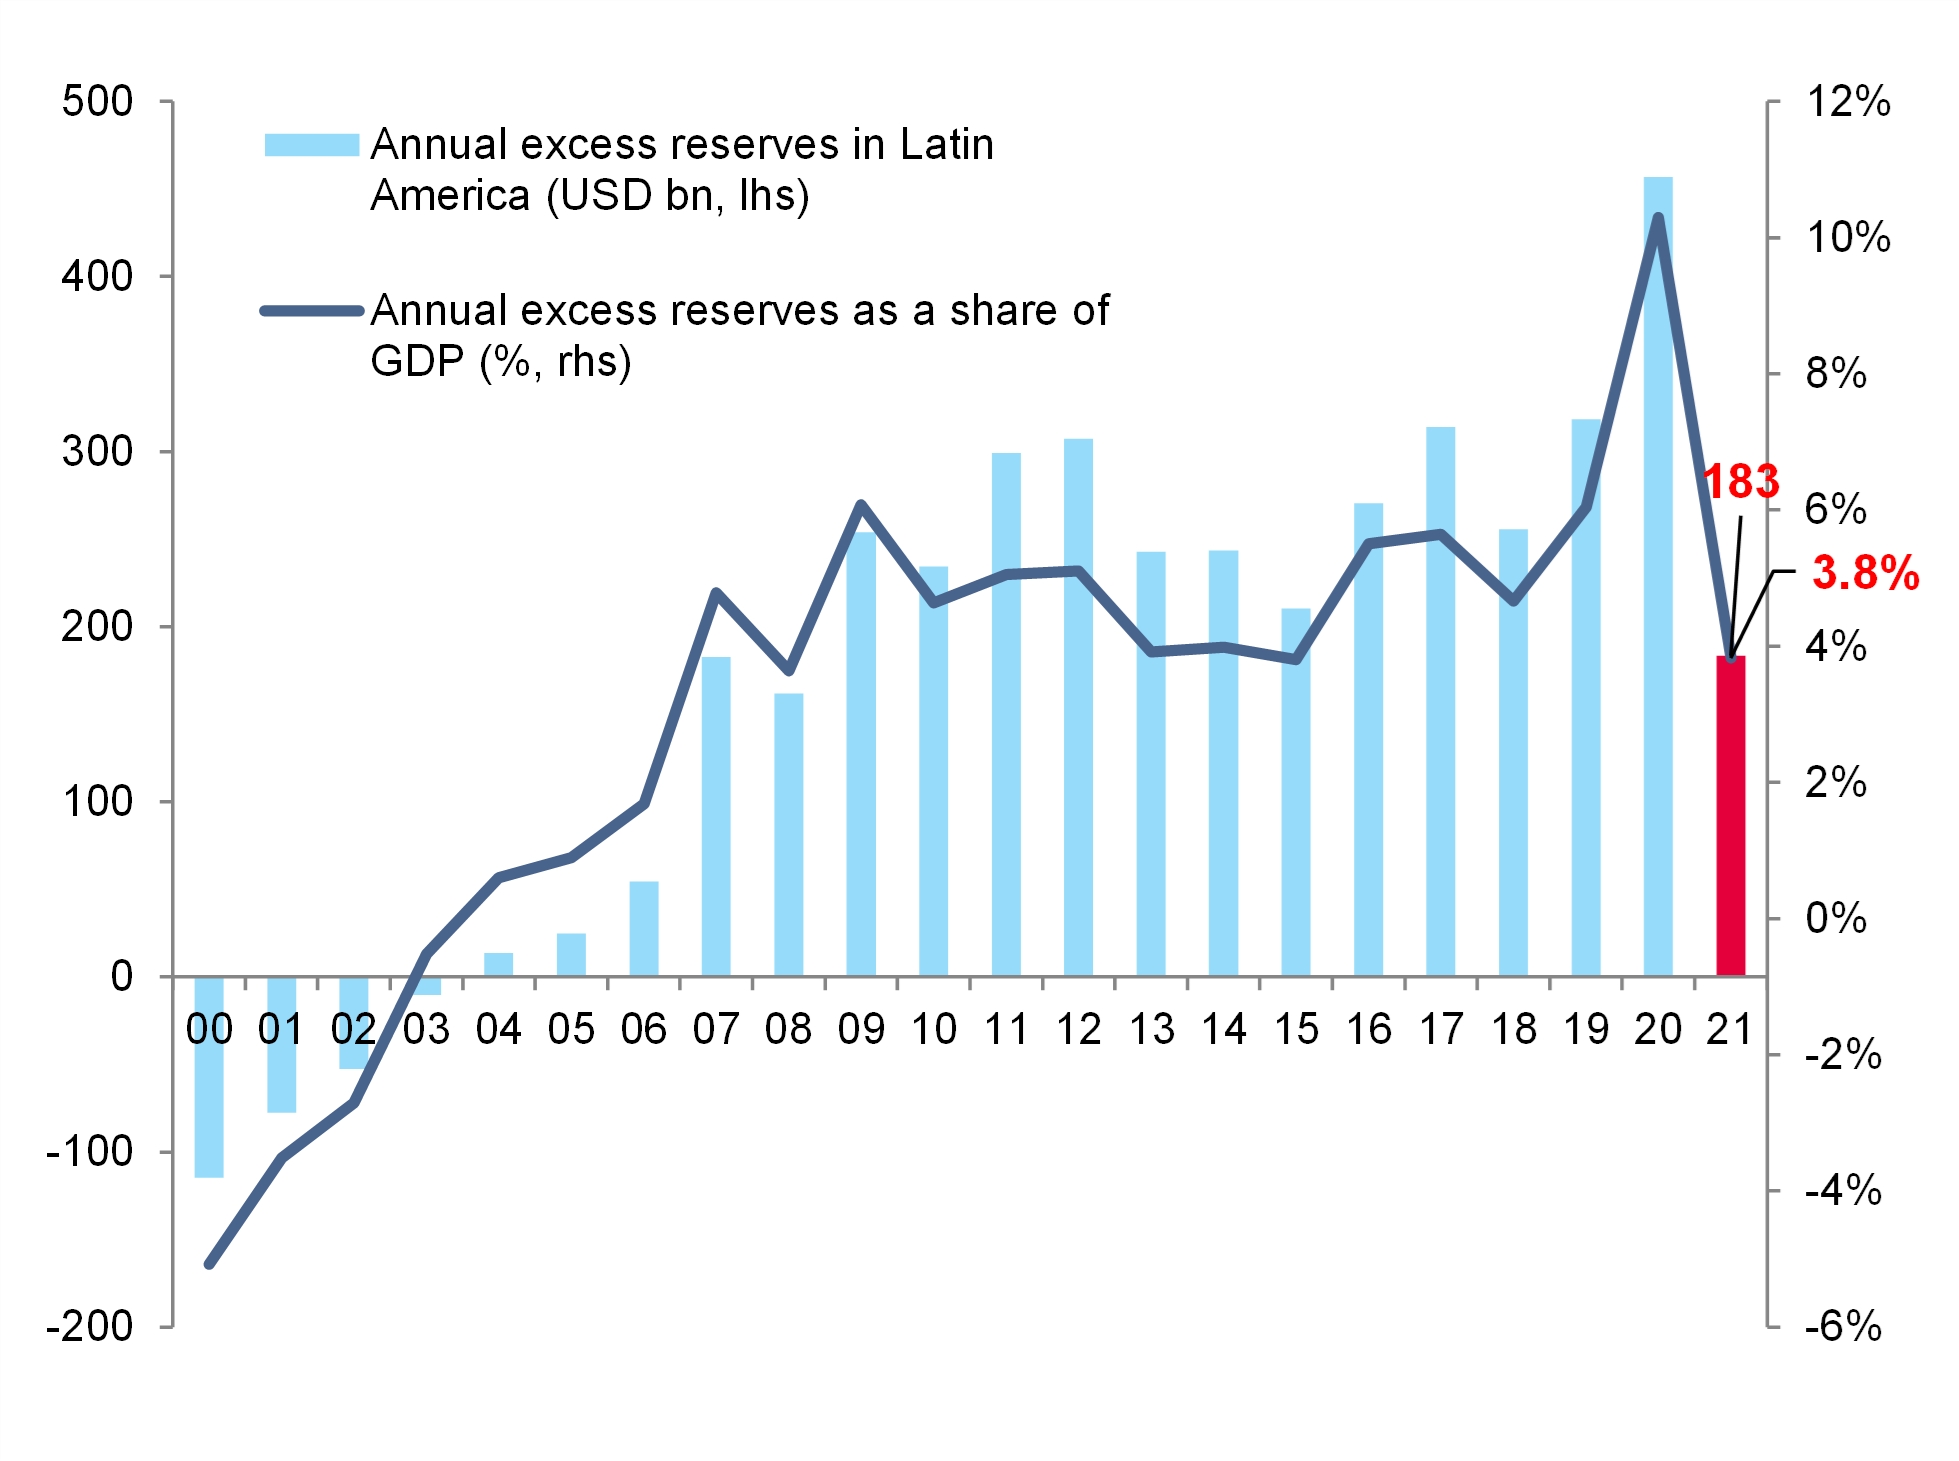 Cenário adverso / choque: “Excesso” de reservas cambiais na América Latina (USD e % do PIB) / Fontes: National Statistics, IHS Data Insight, Allianz Research / Divulgação